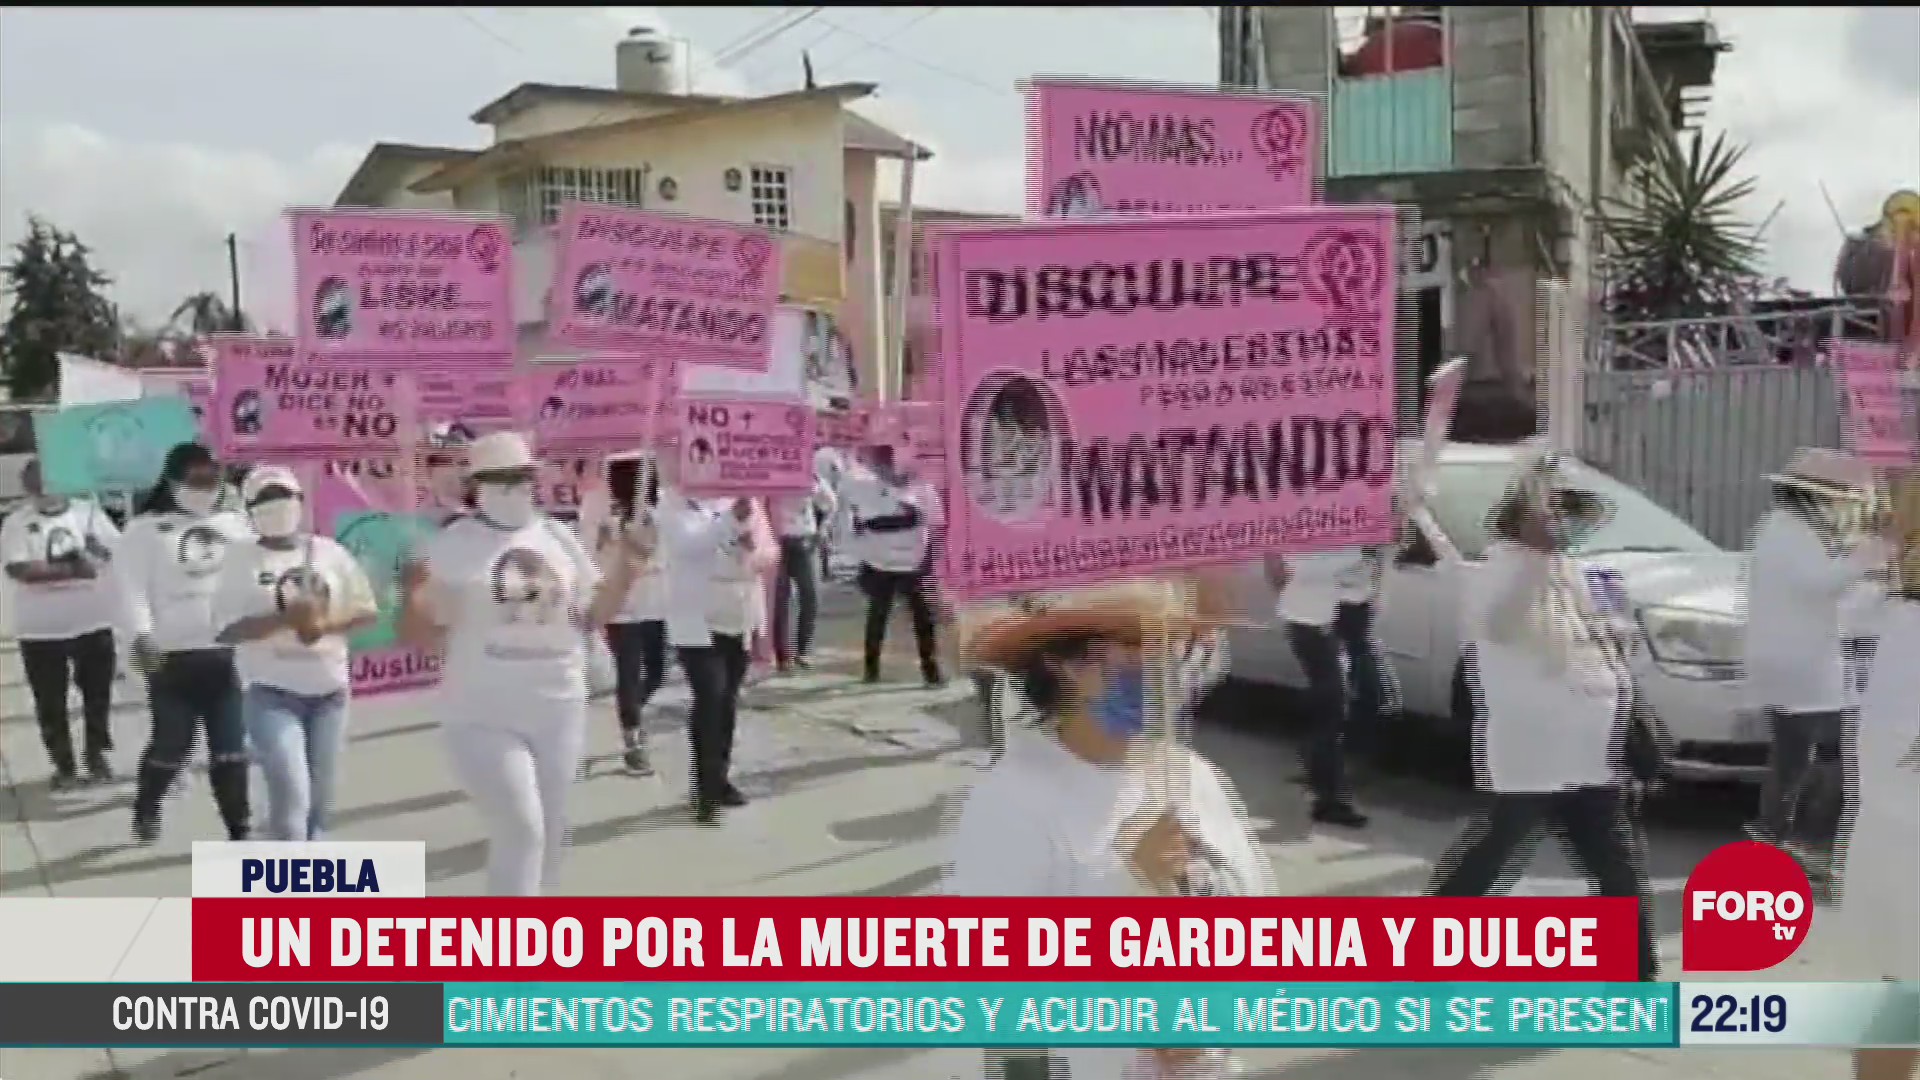 FOTO: 21 de junio 2020, marchan en puebla para exigir justicia por la muerte de gardenia y dulce